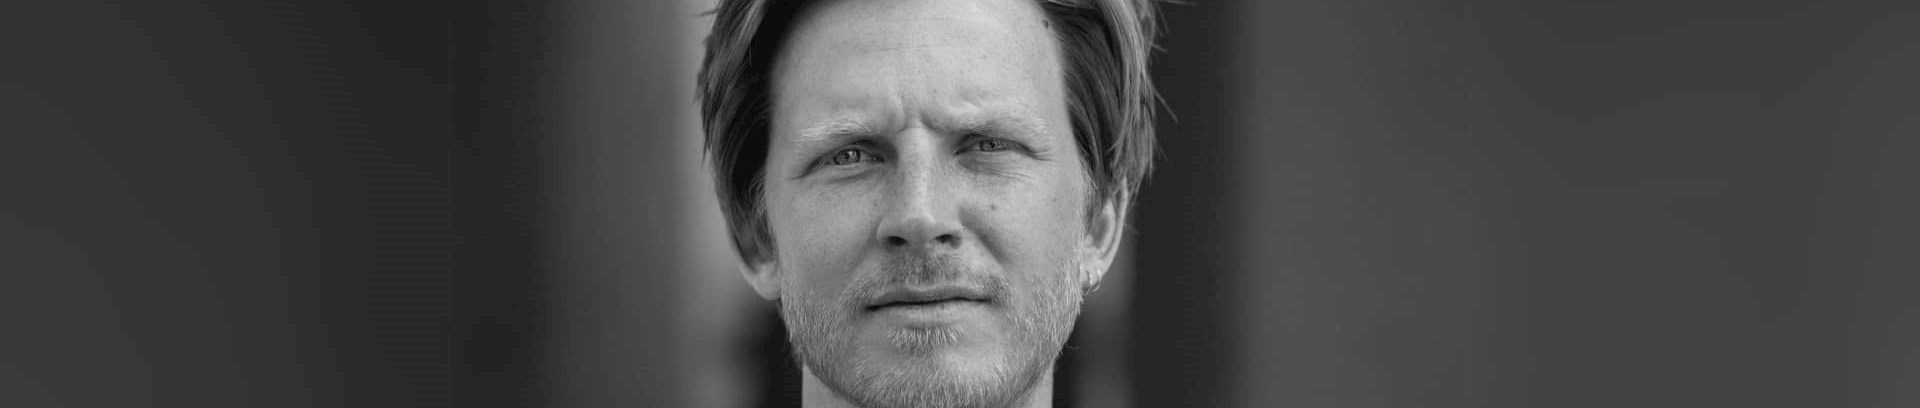 Rasmus Dalland, forfatter, journalist og har senest udgivet bogen ’Jordbundet – en rejse rundt i dansk landbrug’. Foredragsholder i FOF Aarhus.